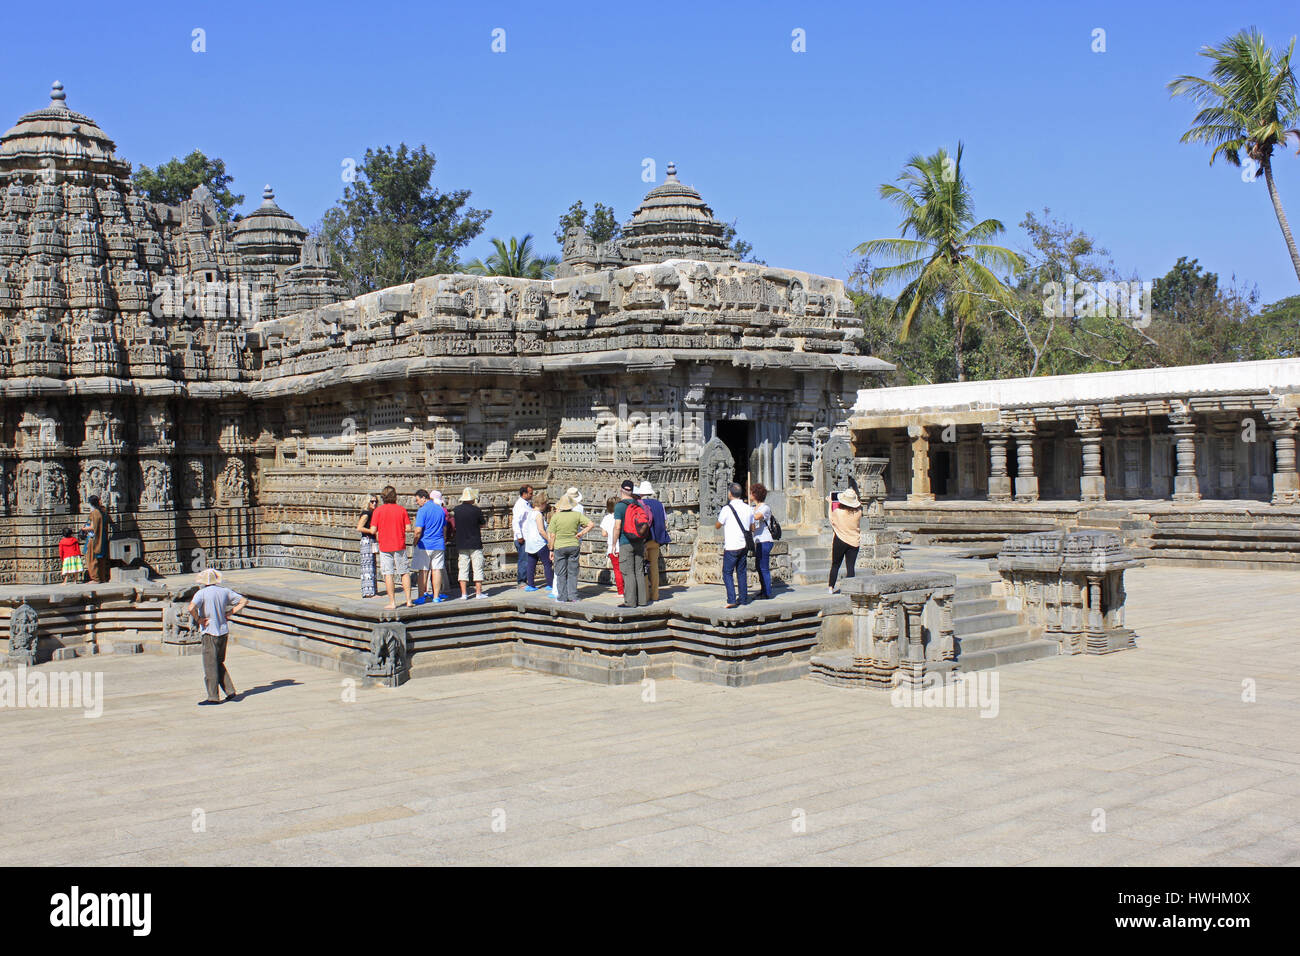 Los turistas admirando las esculturas de piedra de los principales santuarios en el templo Chennakesava, arquitectura de Hoysala, Somnathpur, Karnataka, India Foto de stock